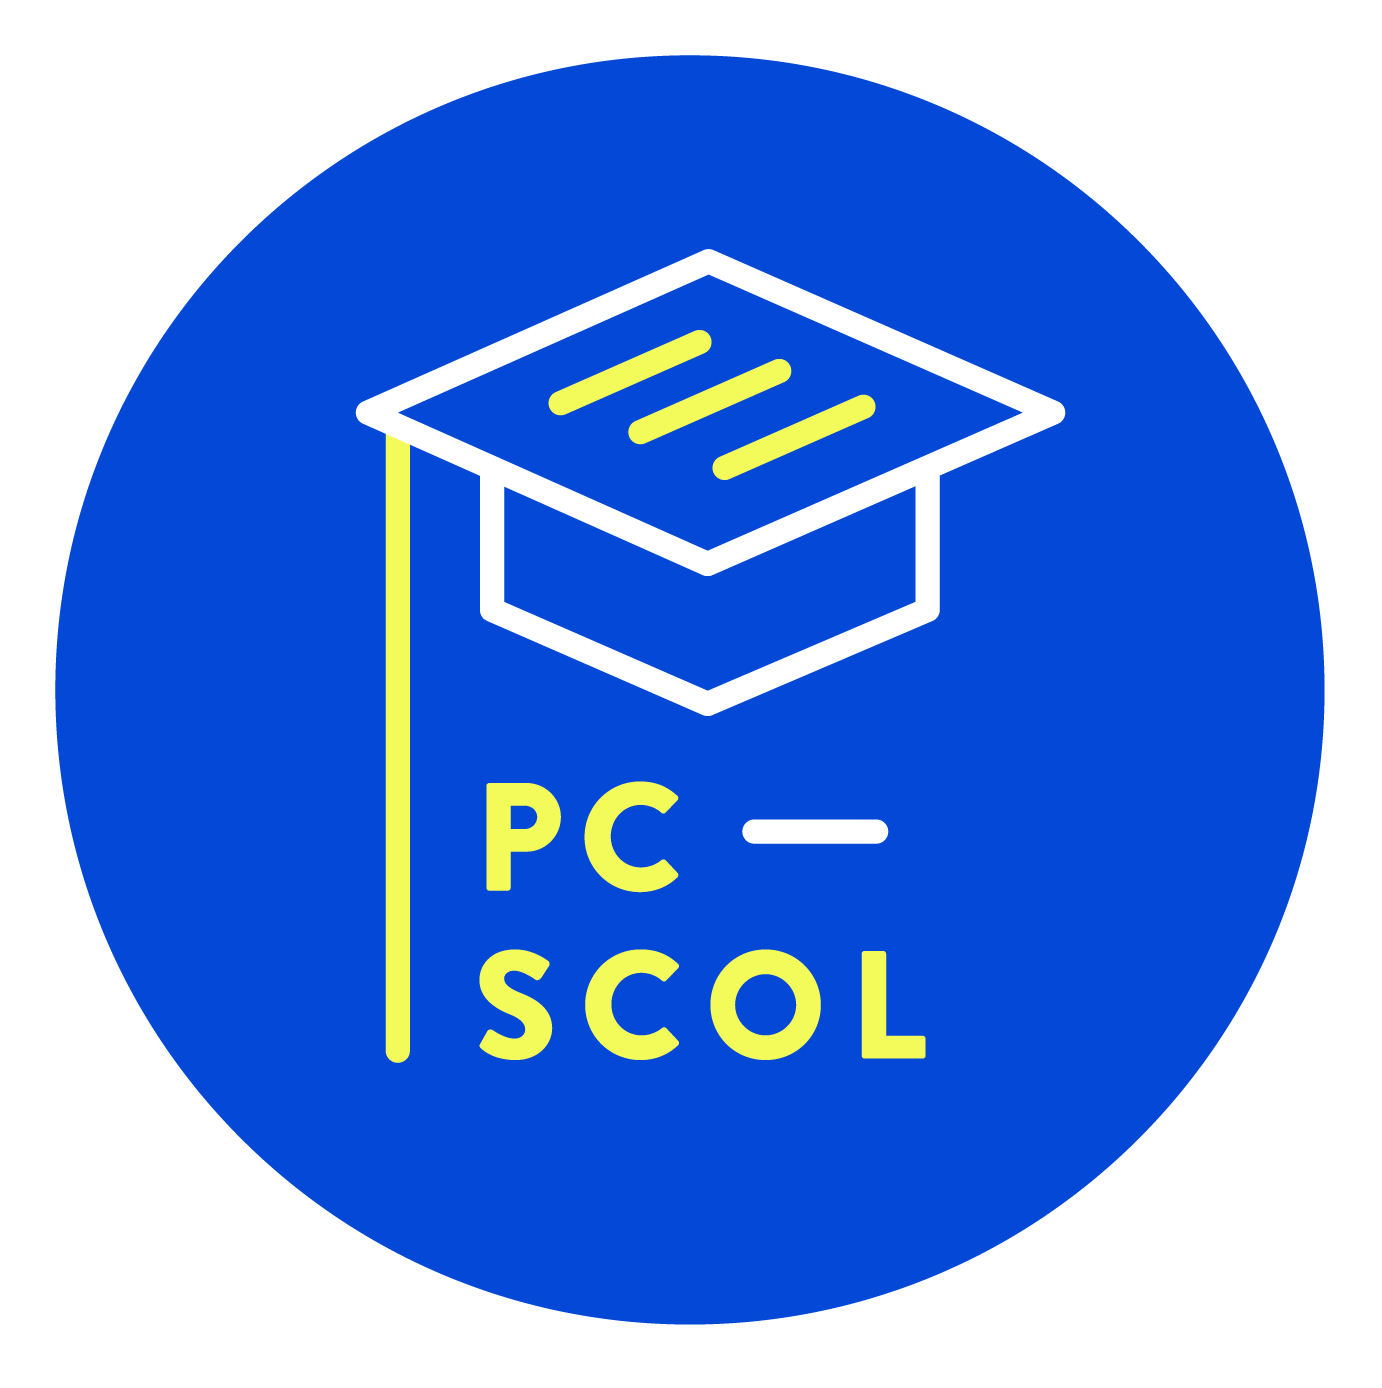 Le forum de discussion du projet PC-Scol